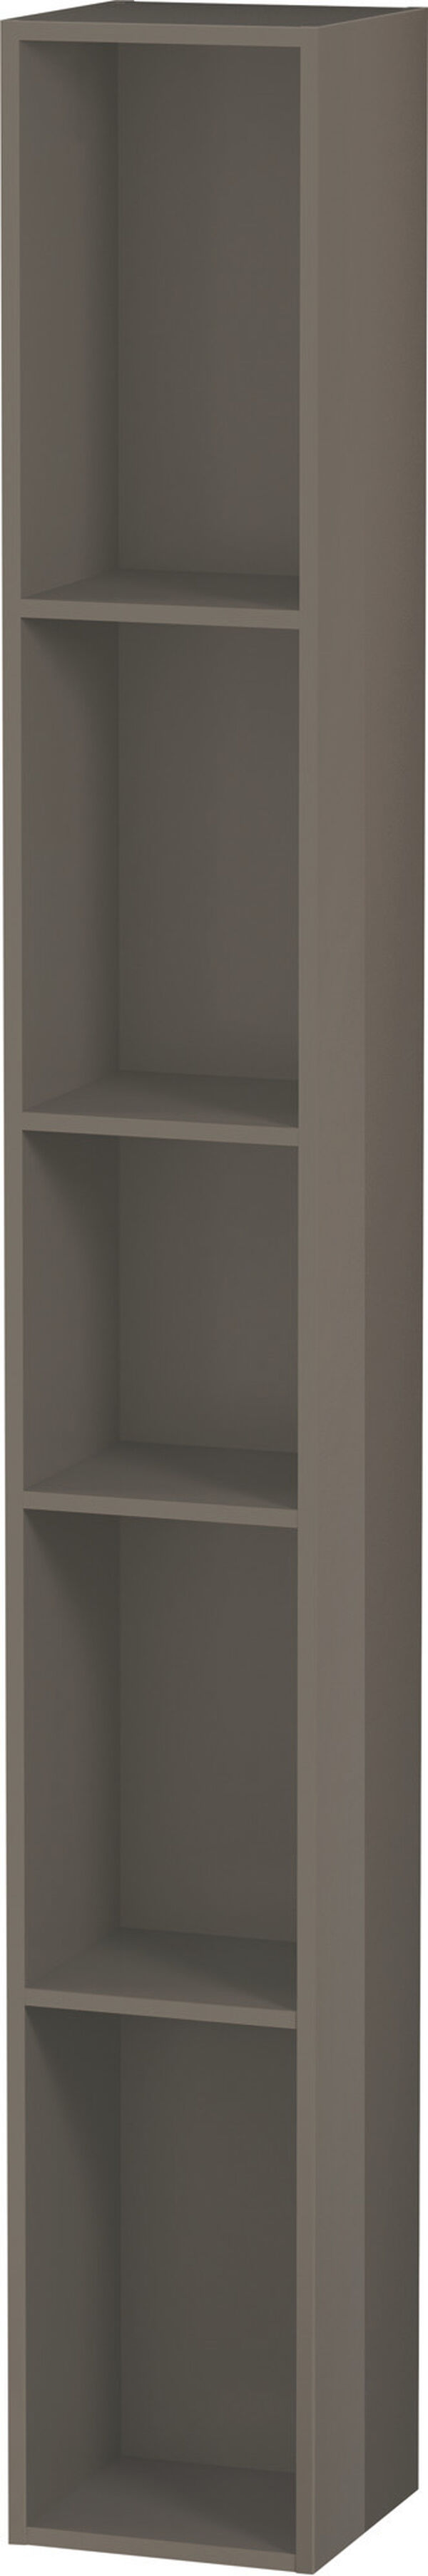 Elemento regale L-Cube l:18 cm, a:140 cm, p:18 cm verticale 5 vani image number 0